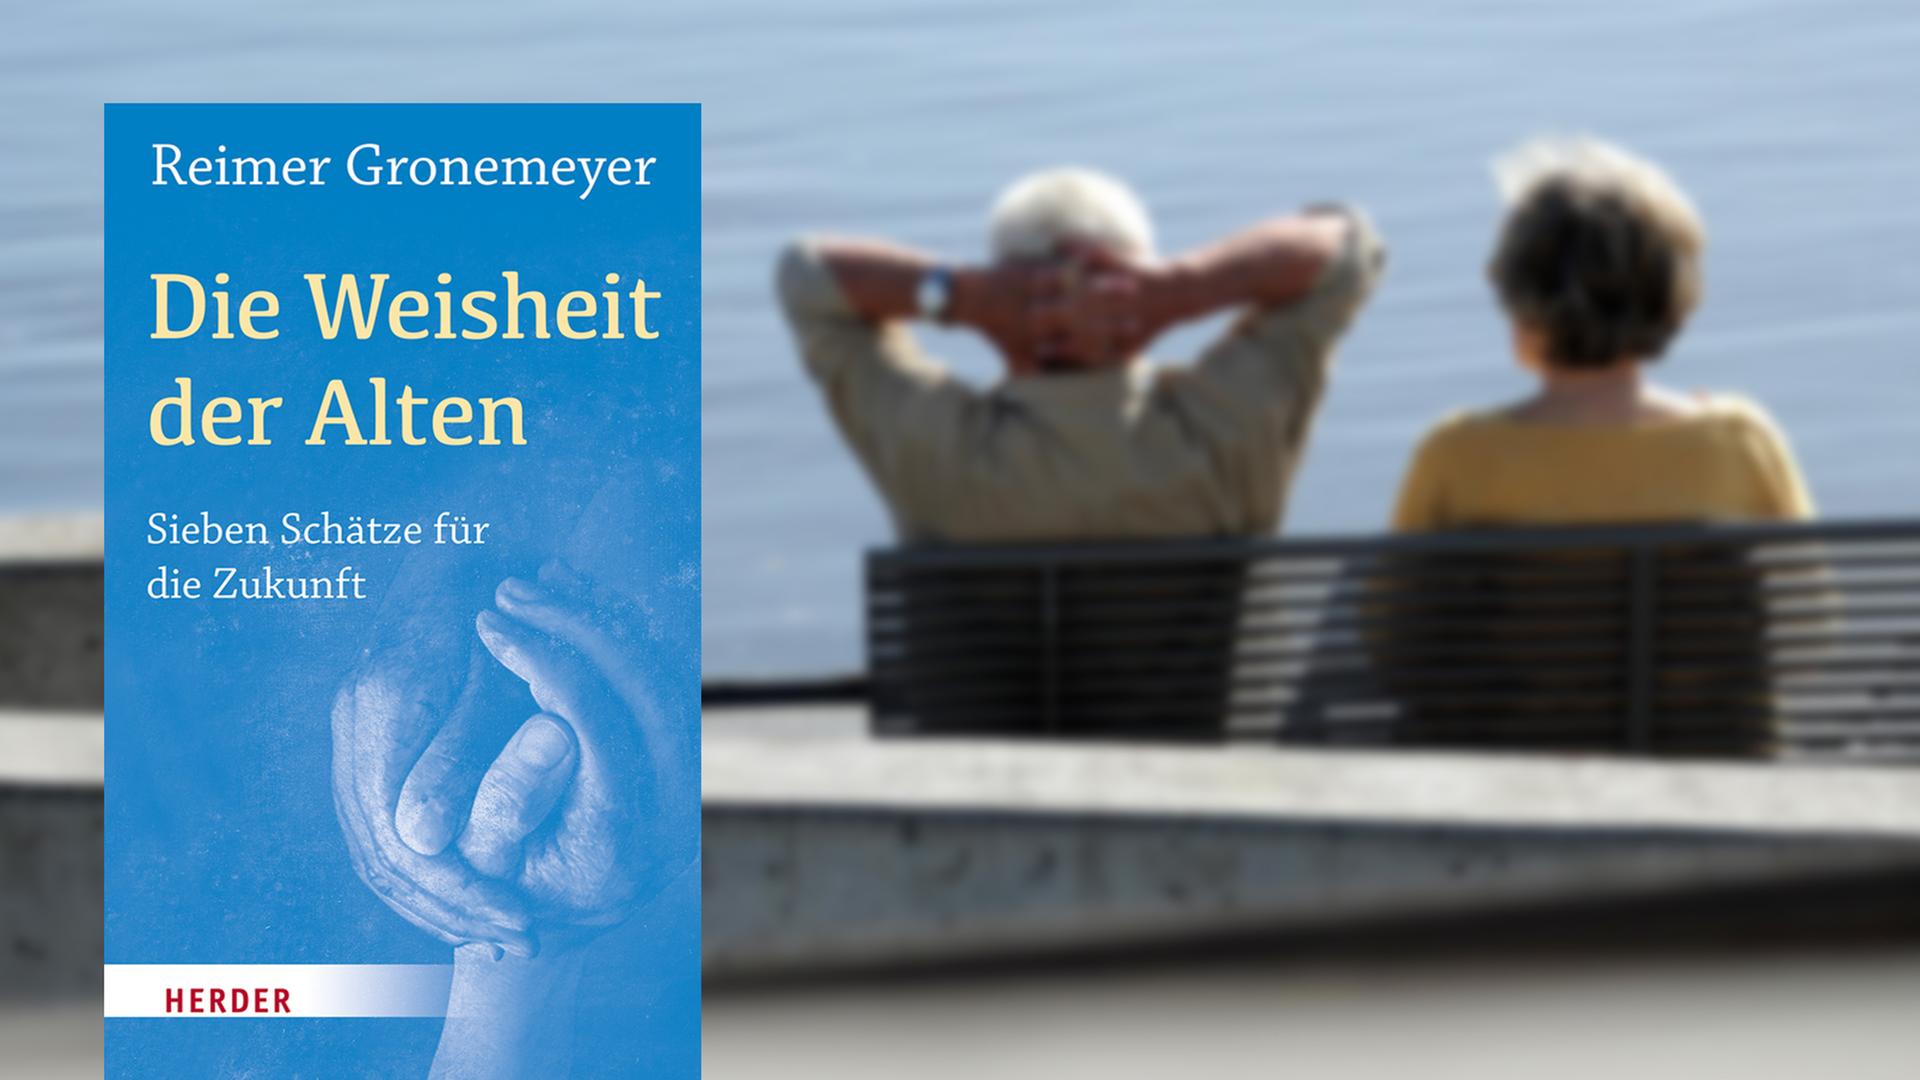 Buchcover Reimer Gronemeyer: "Die Weisheit der Alten"